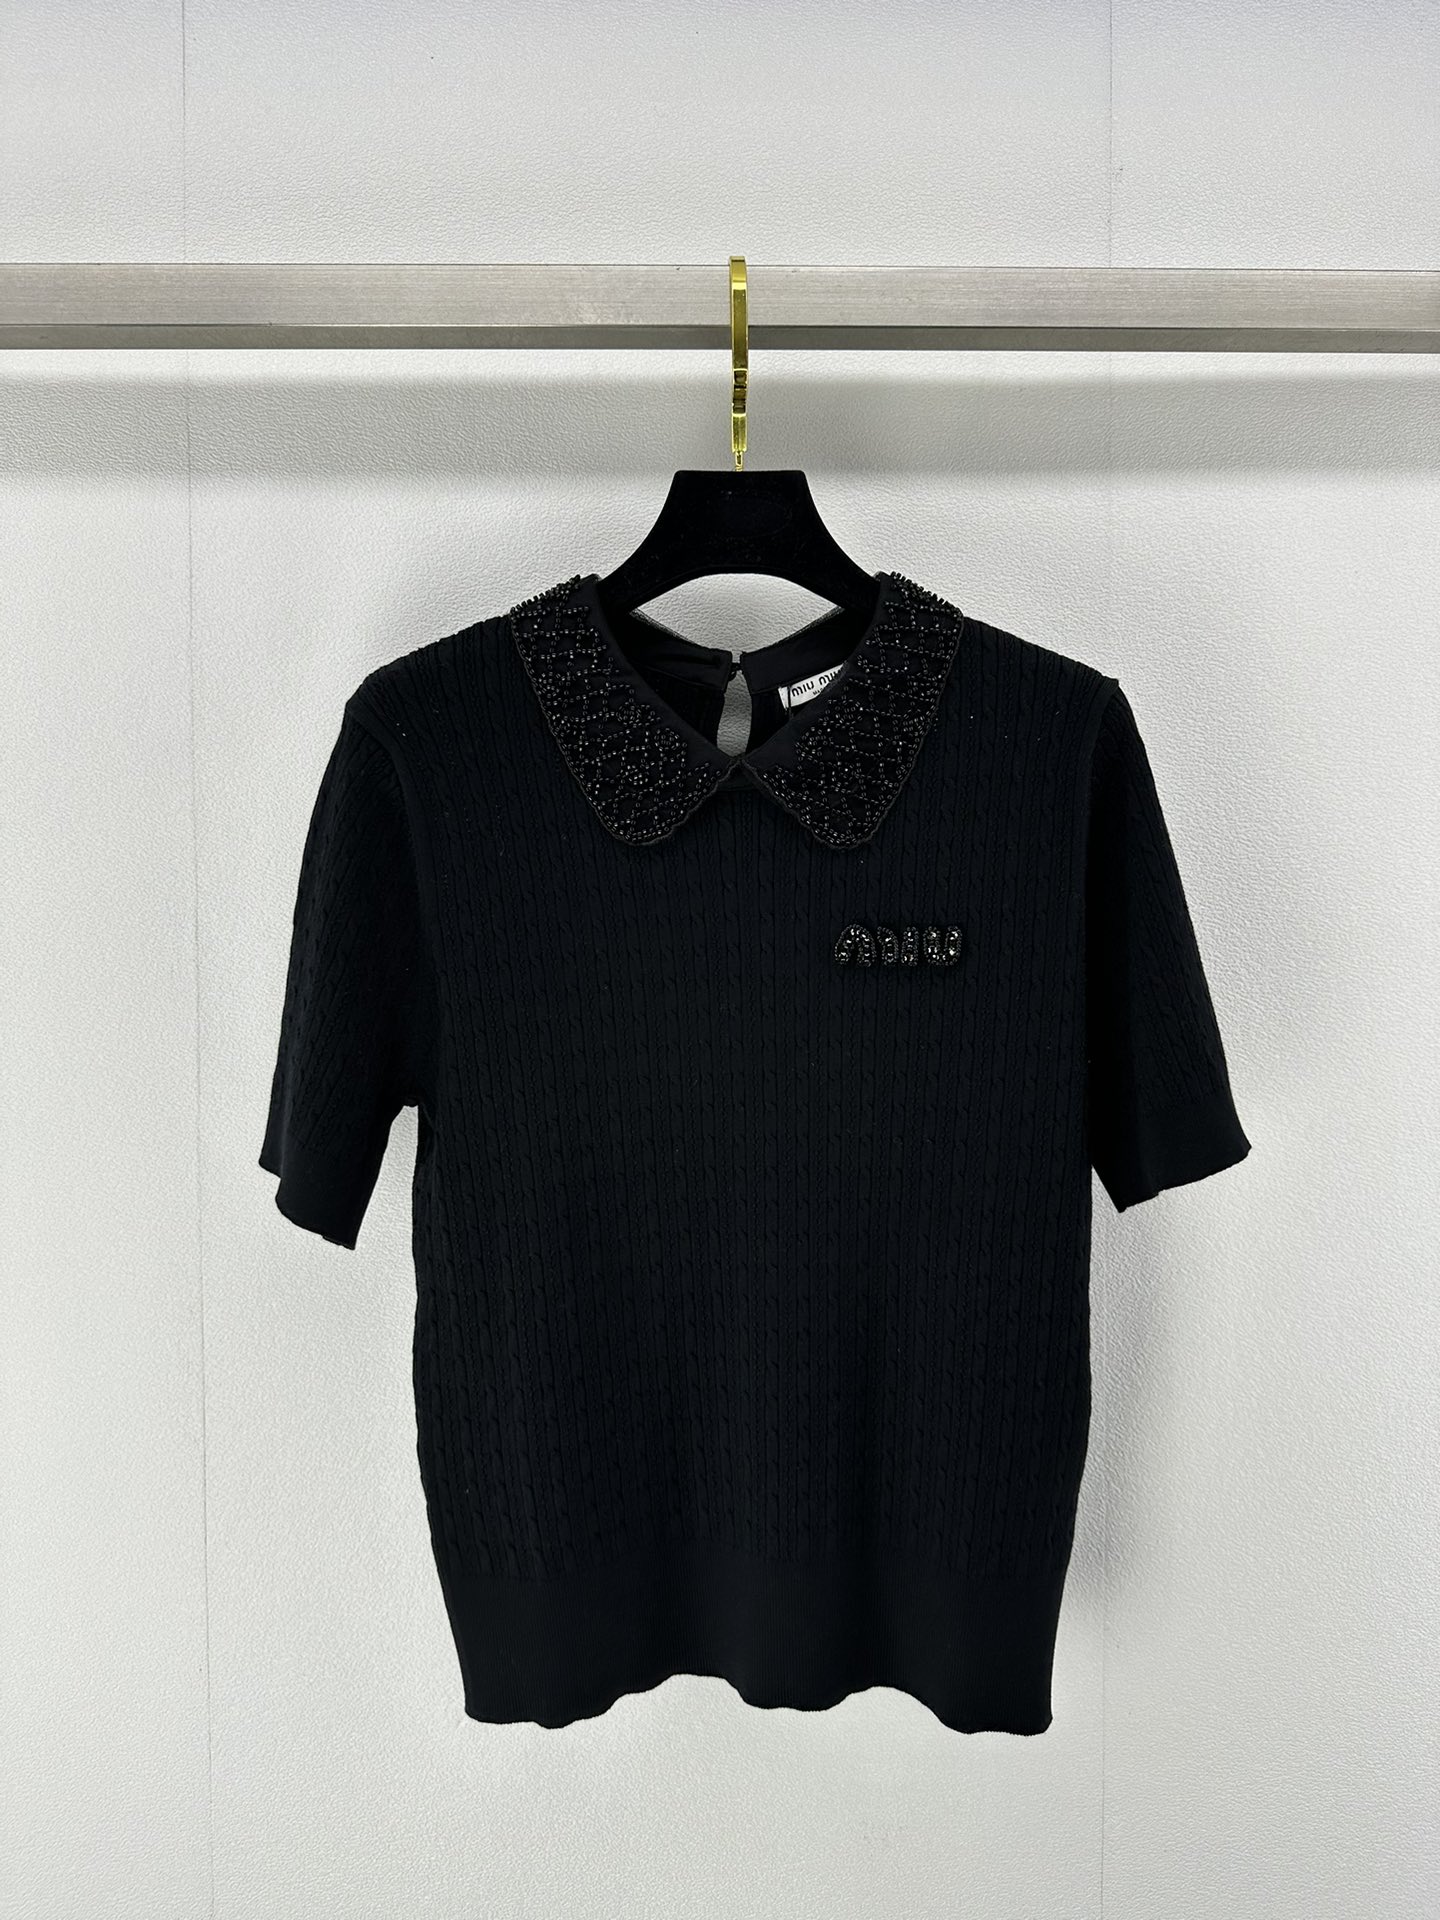 ミュウミュウに似たブランド激安通販 短袖 Tシャツ トップス 軽量 薄い シンプル 純綿 HOT品質保証 ブラック_1